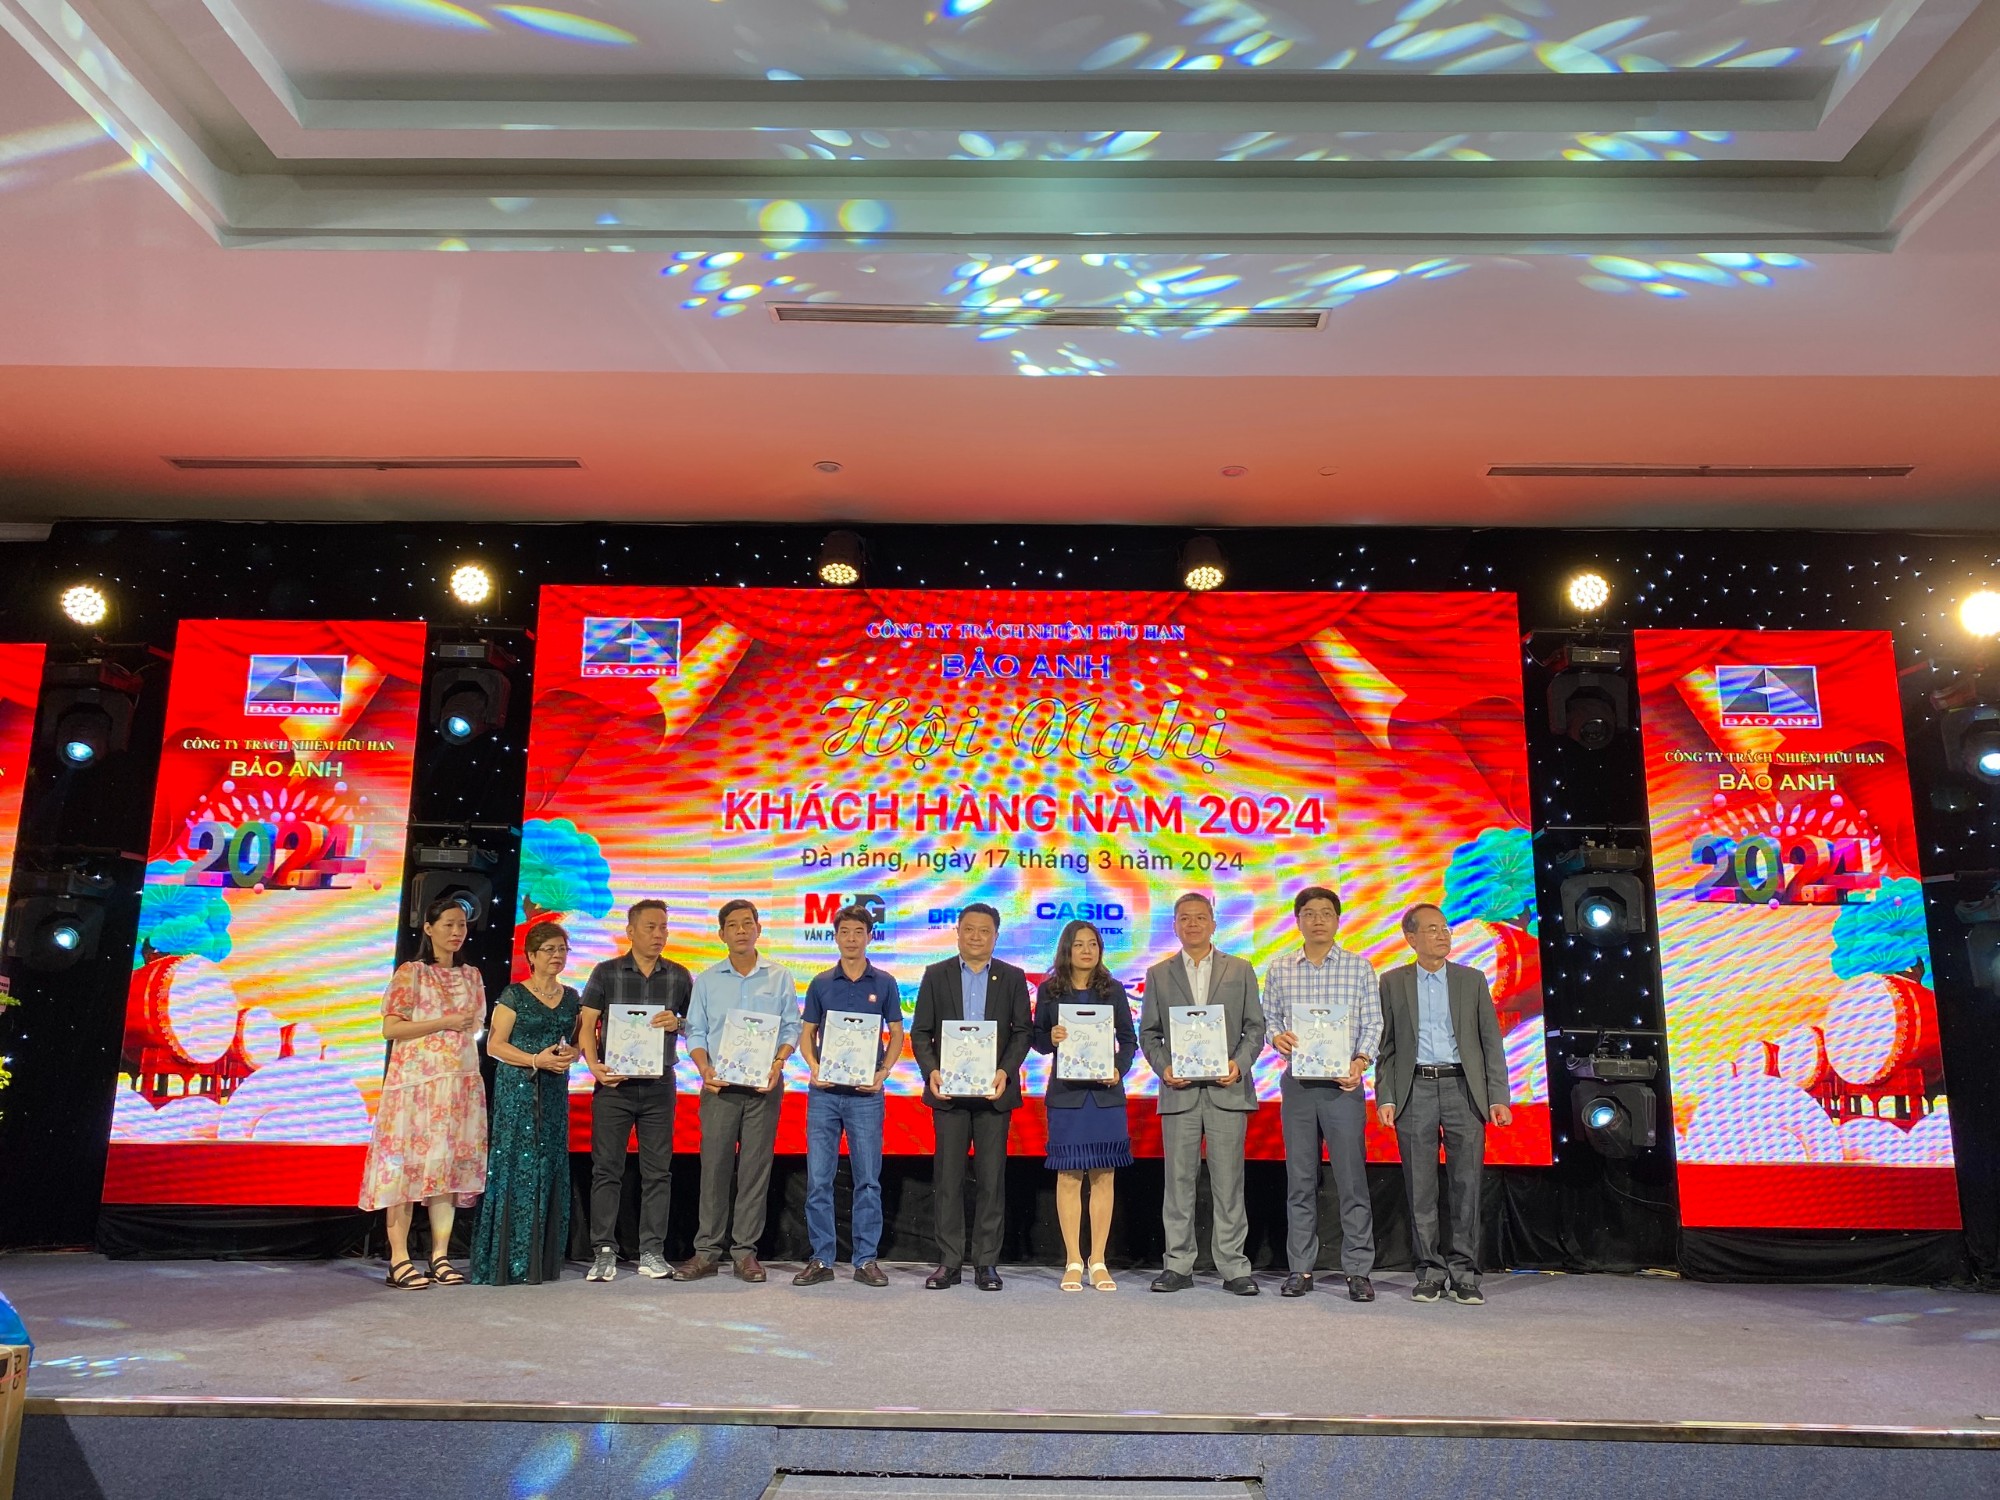 Ông Võ Huấn Trực, Phó Tổng Giám đốc Công ty BITEX (thứ 5 từ phải sang) nhận quà lưu niệm từ Nhà phân phối Công ty TNHH Bảo Anh trong Hội nghị khách hàng năm 2024 tại Đà Nẵng